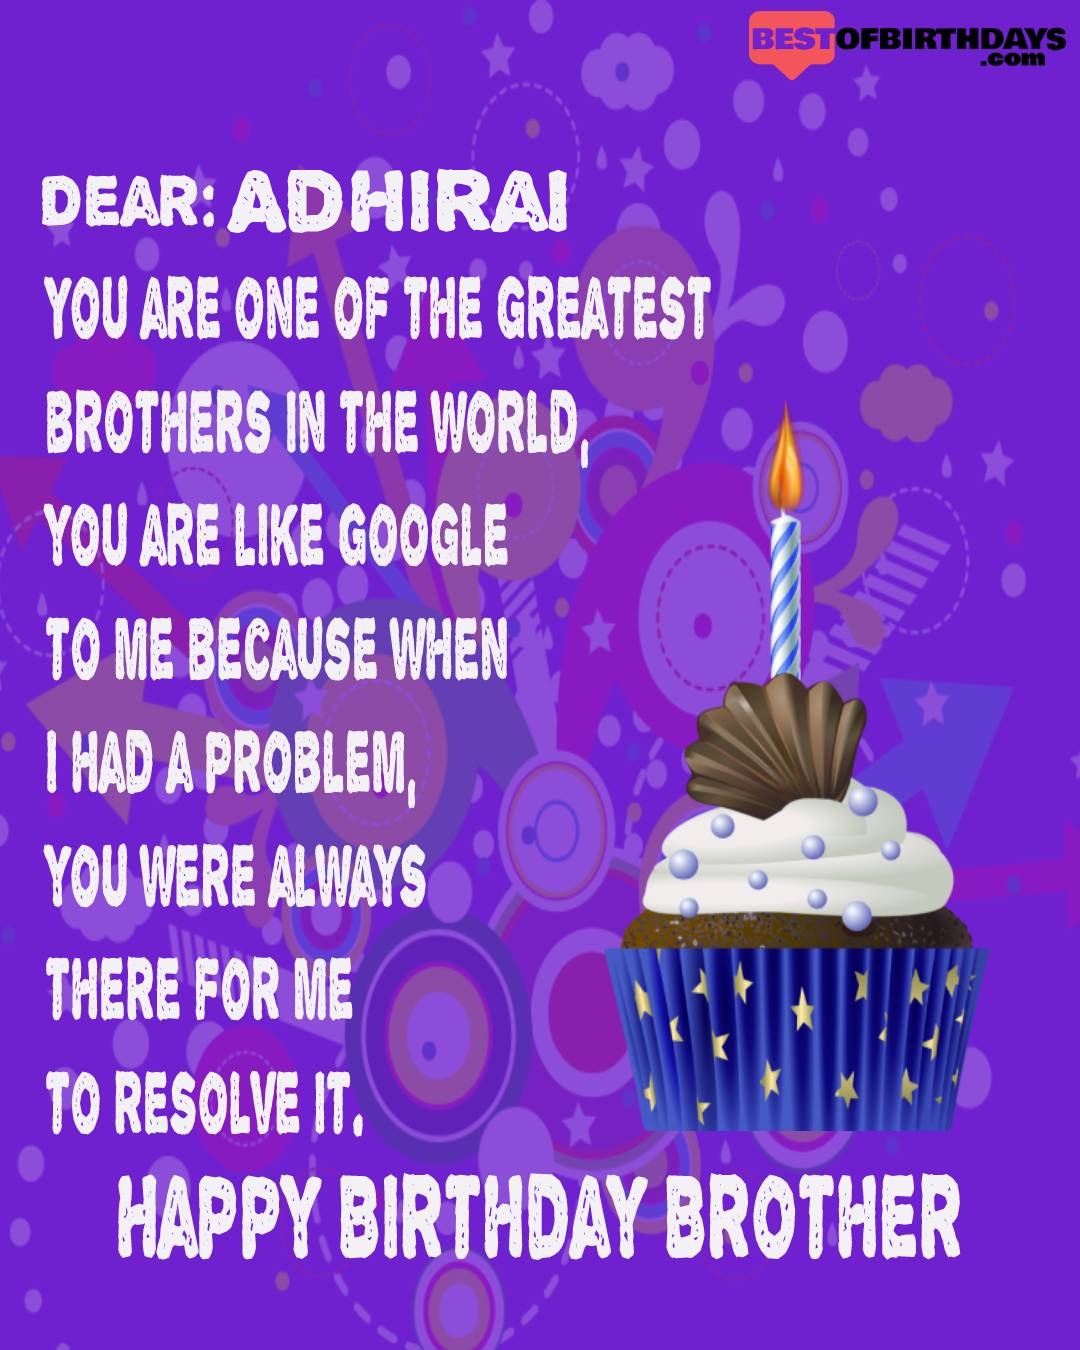 Happy birthday adhirai bhai brother bro